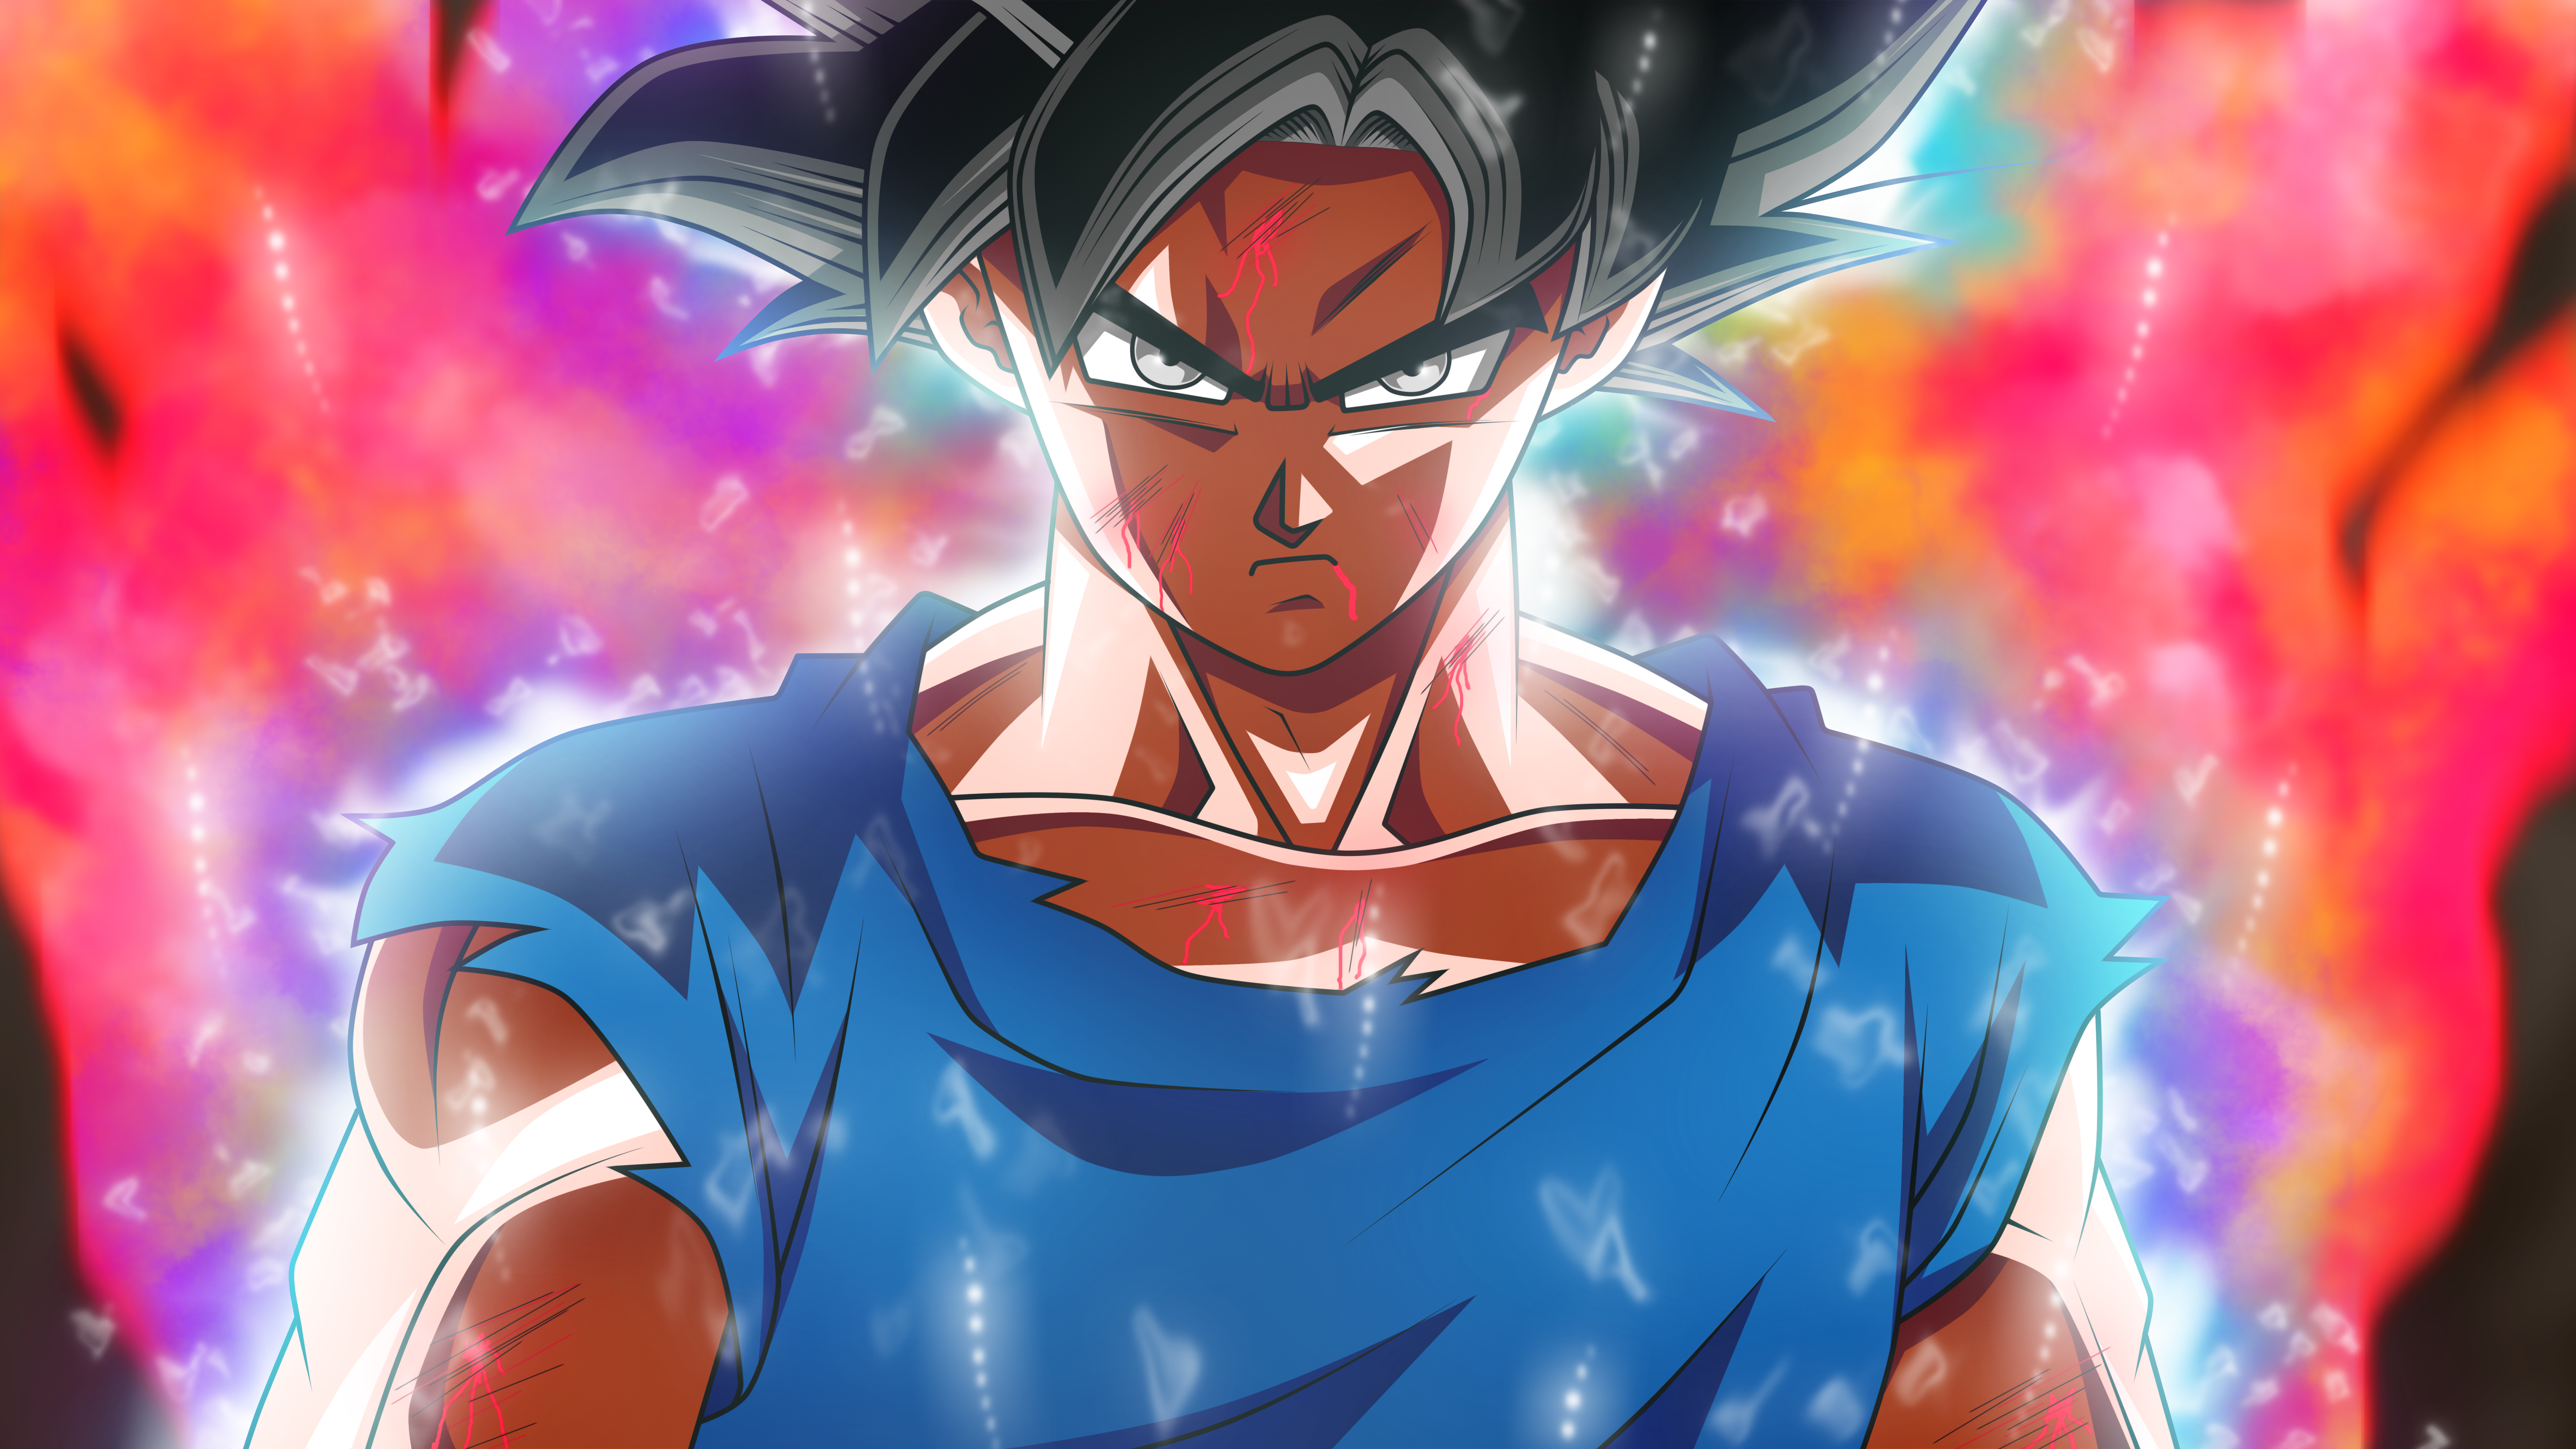 Anime 5760x3240 Son Goku anime boys anime dark hair face angry black hair looking at viewer